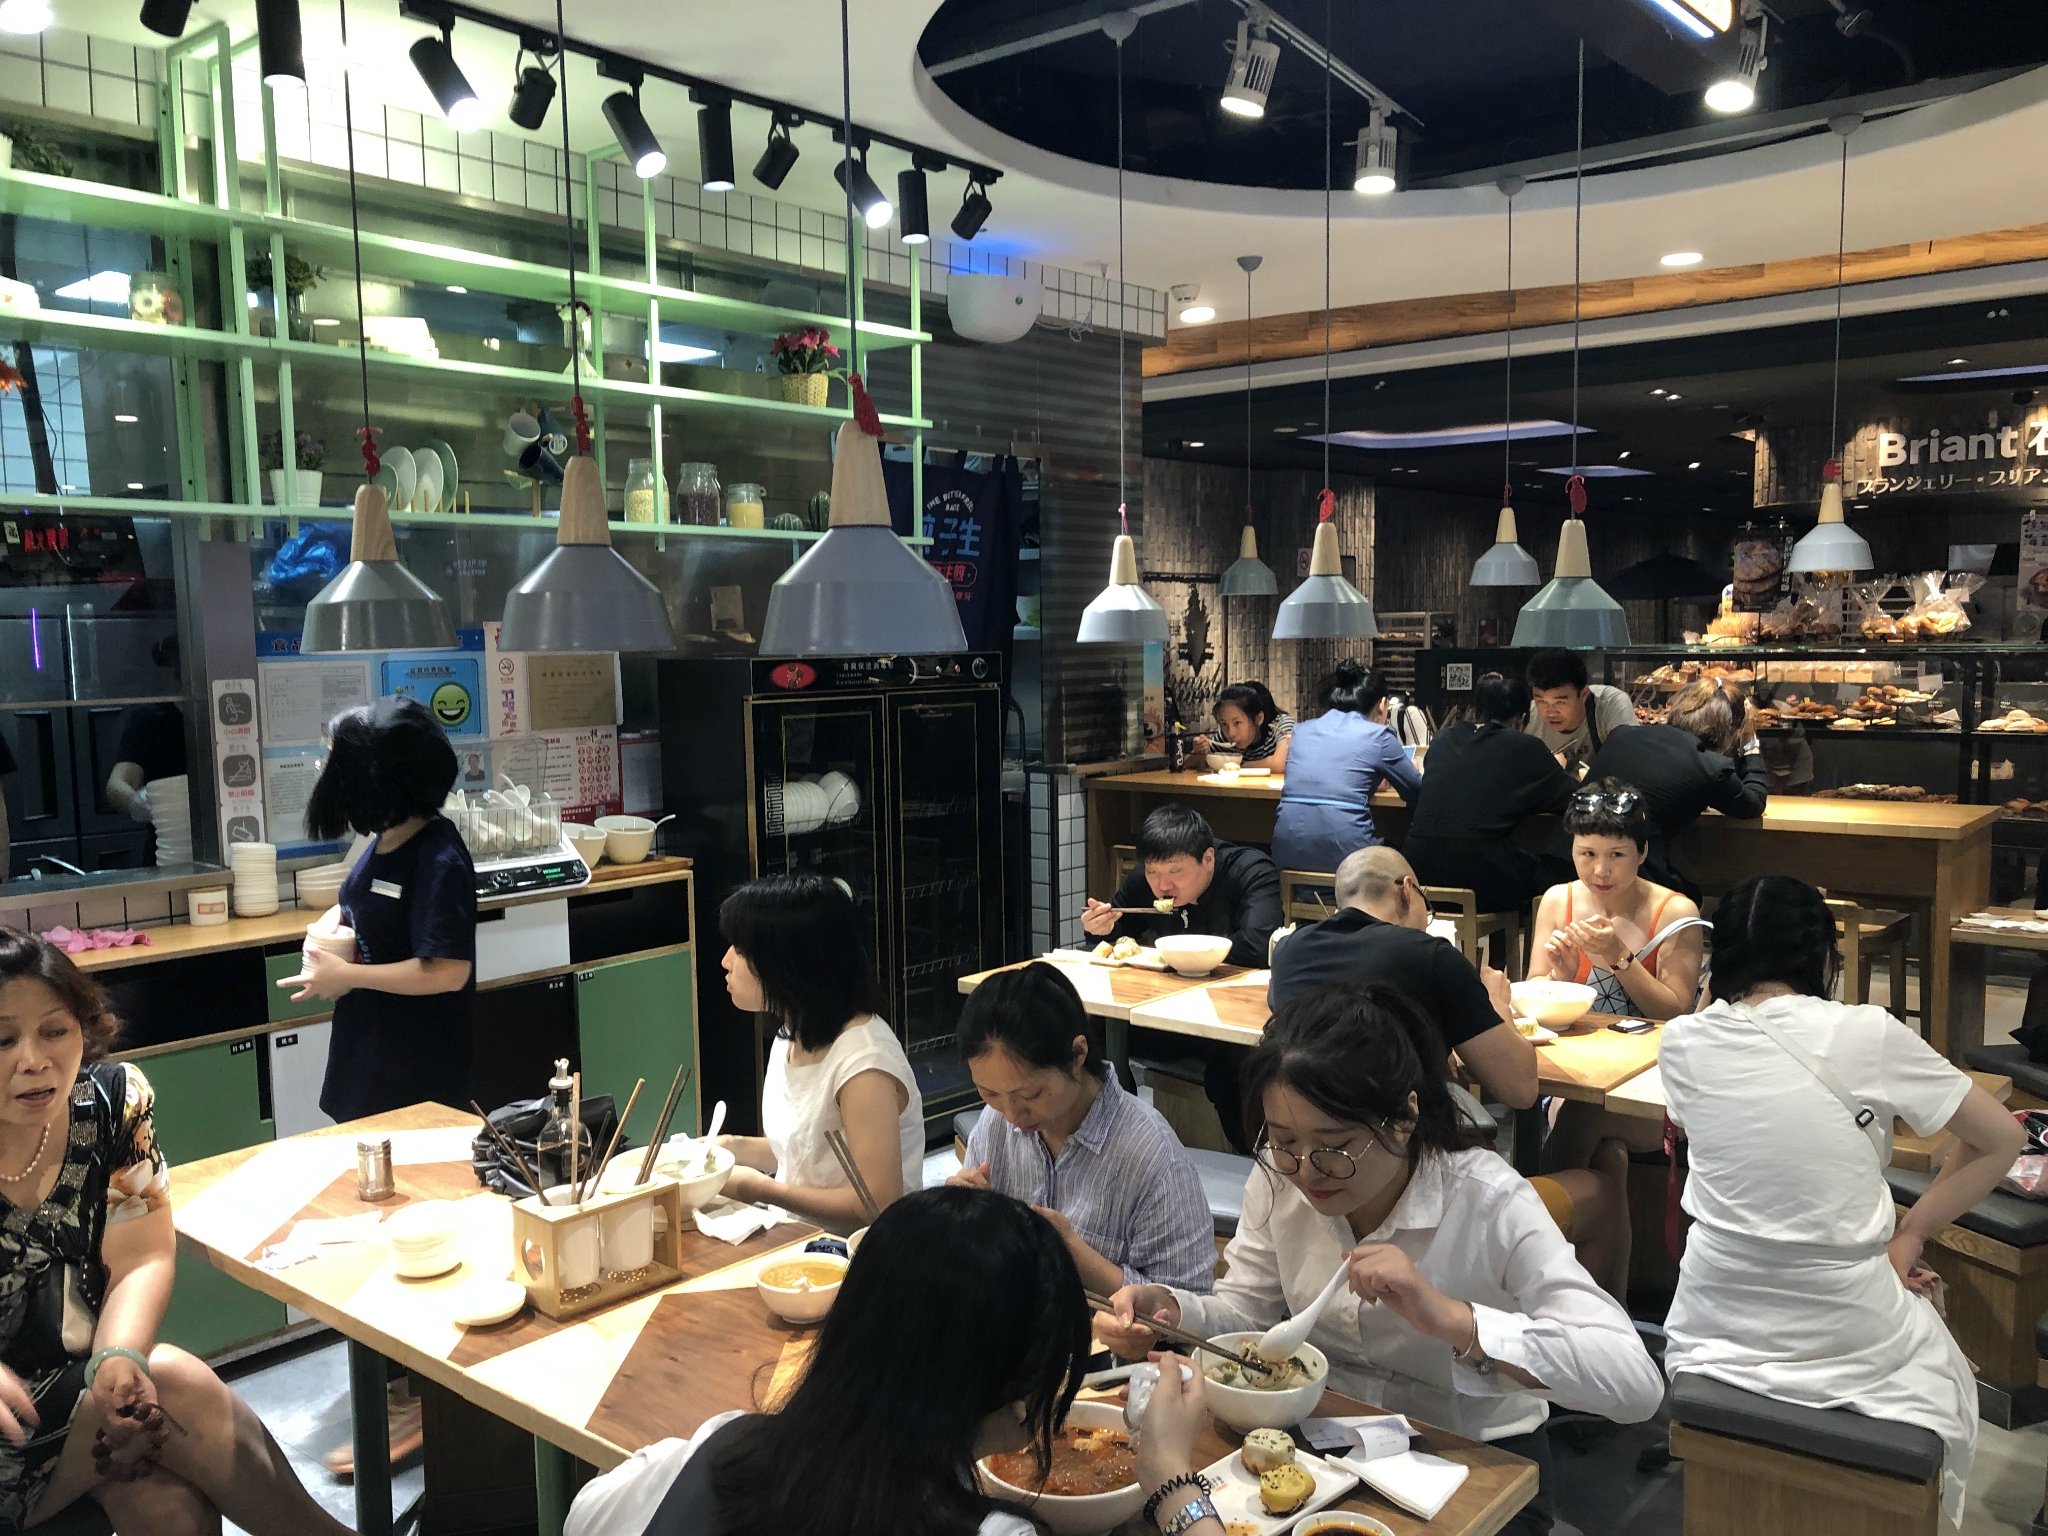 大虾生煎(新世界大丸百货店)美食餐厅,上海新世界大丸百货是我比较